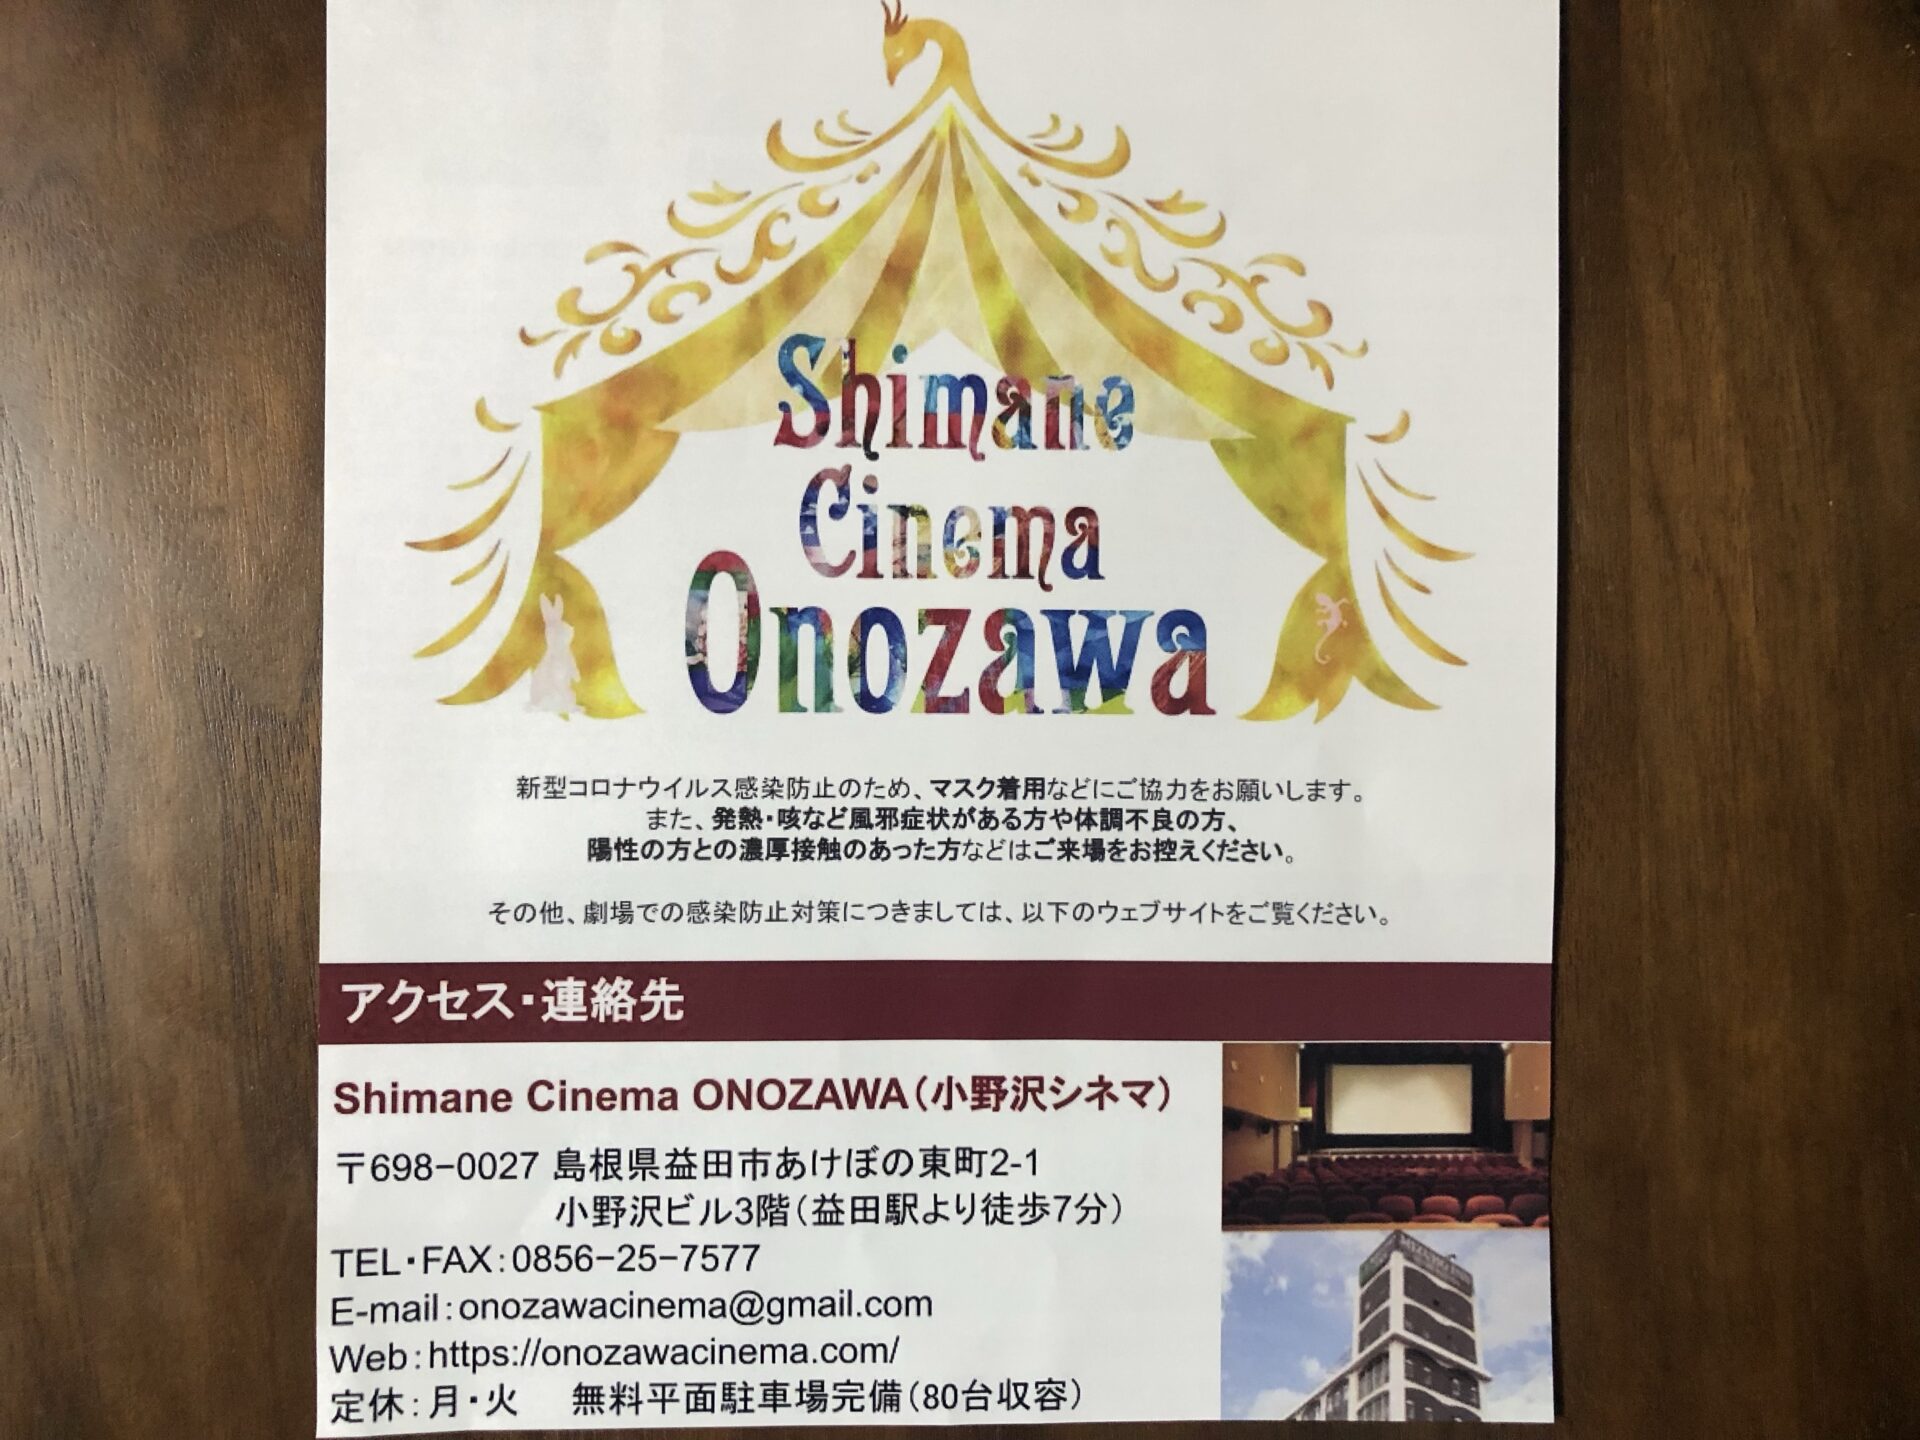 「shimane cinema onozawa」のお知らせ